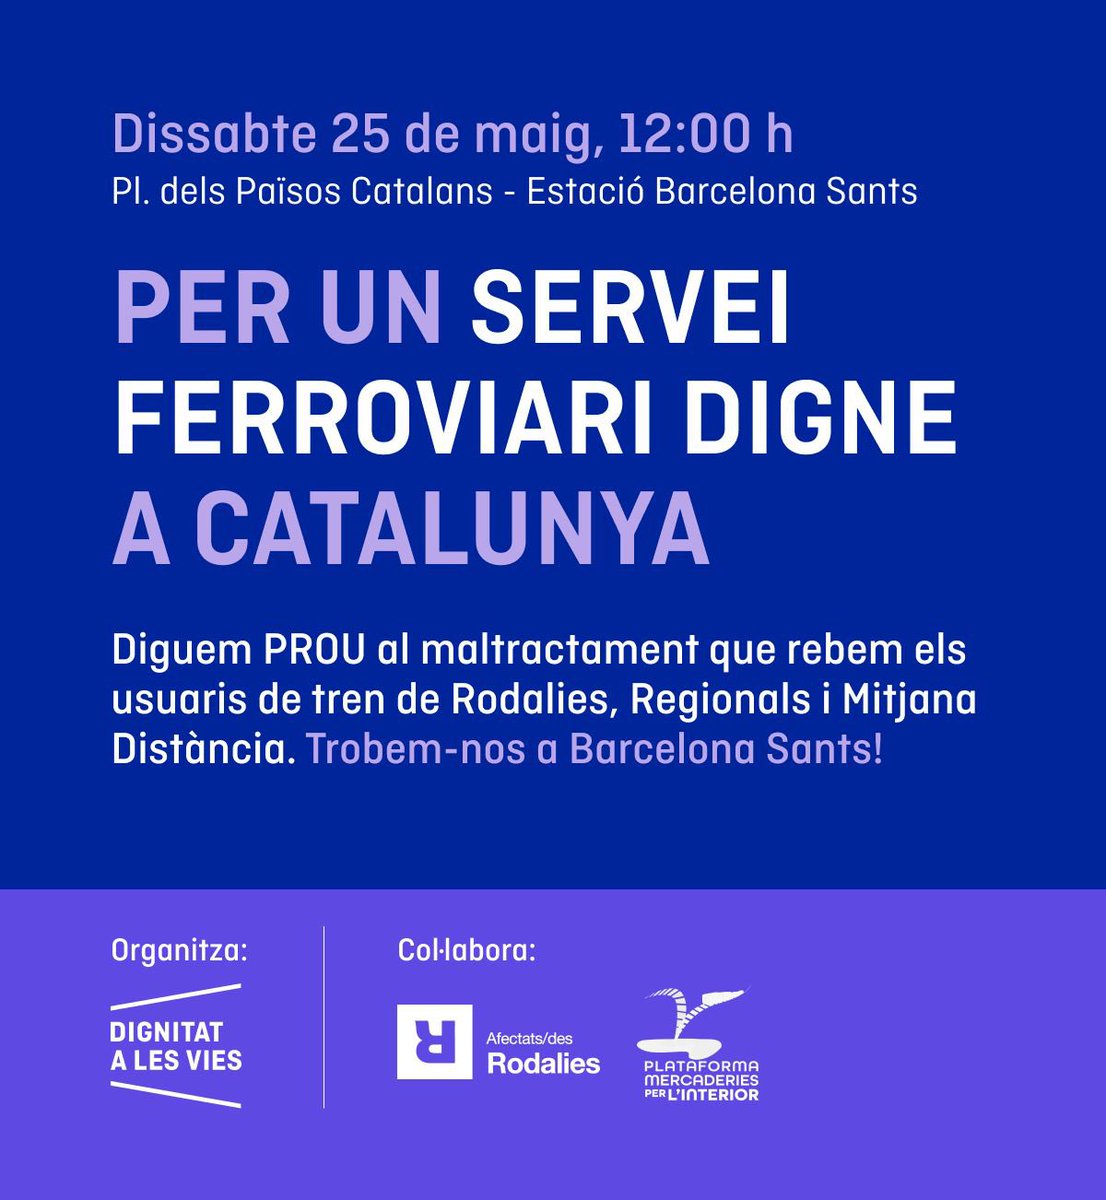 📣 Dissabte 25 de maig a les 12 h farem una concentració a Barcelona Sants per denunciar el servei nefast i el tracte que fa anys que patim els usuaris de tren de Catalunya. Ara és el moment, us necessitem. Fem soroll, que ens escoltin  ❗️✊🏻